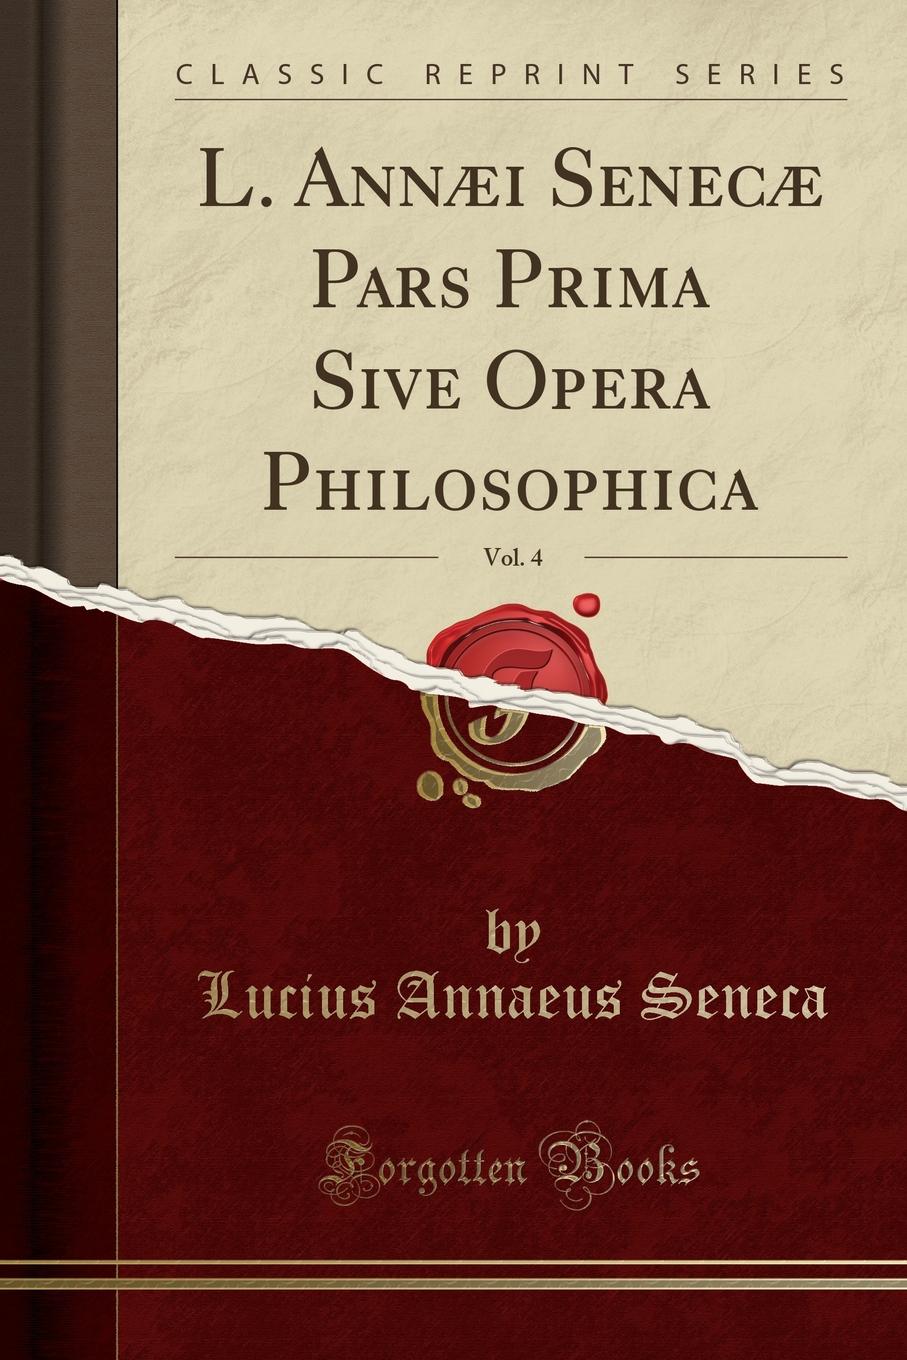 L. Annaei Senecae Pars Prima Sive Opera Philosophica, Vol. 4 (Classic Reprint)